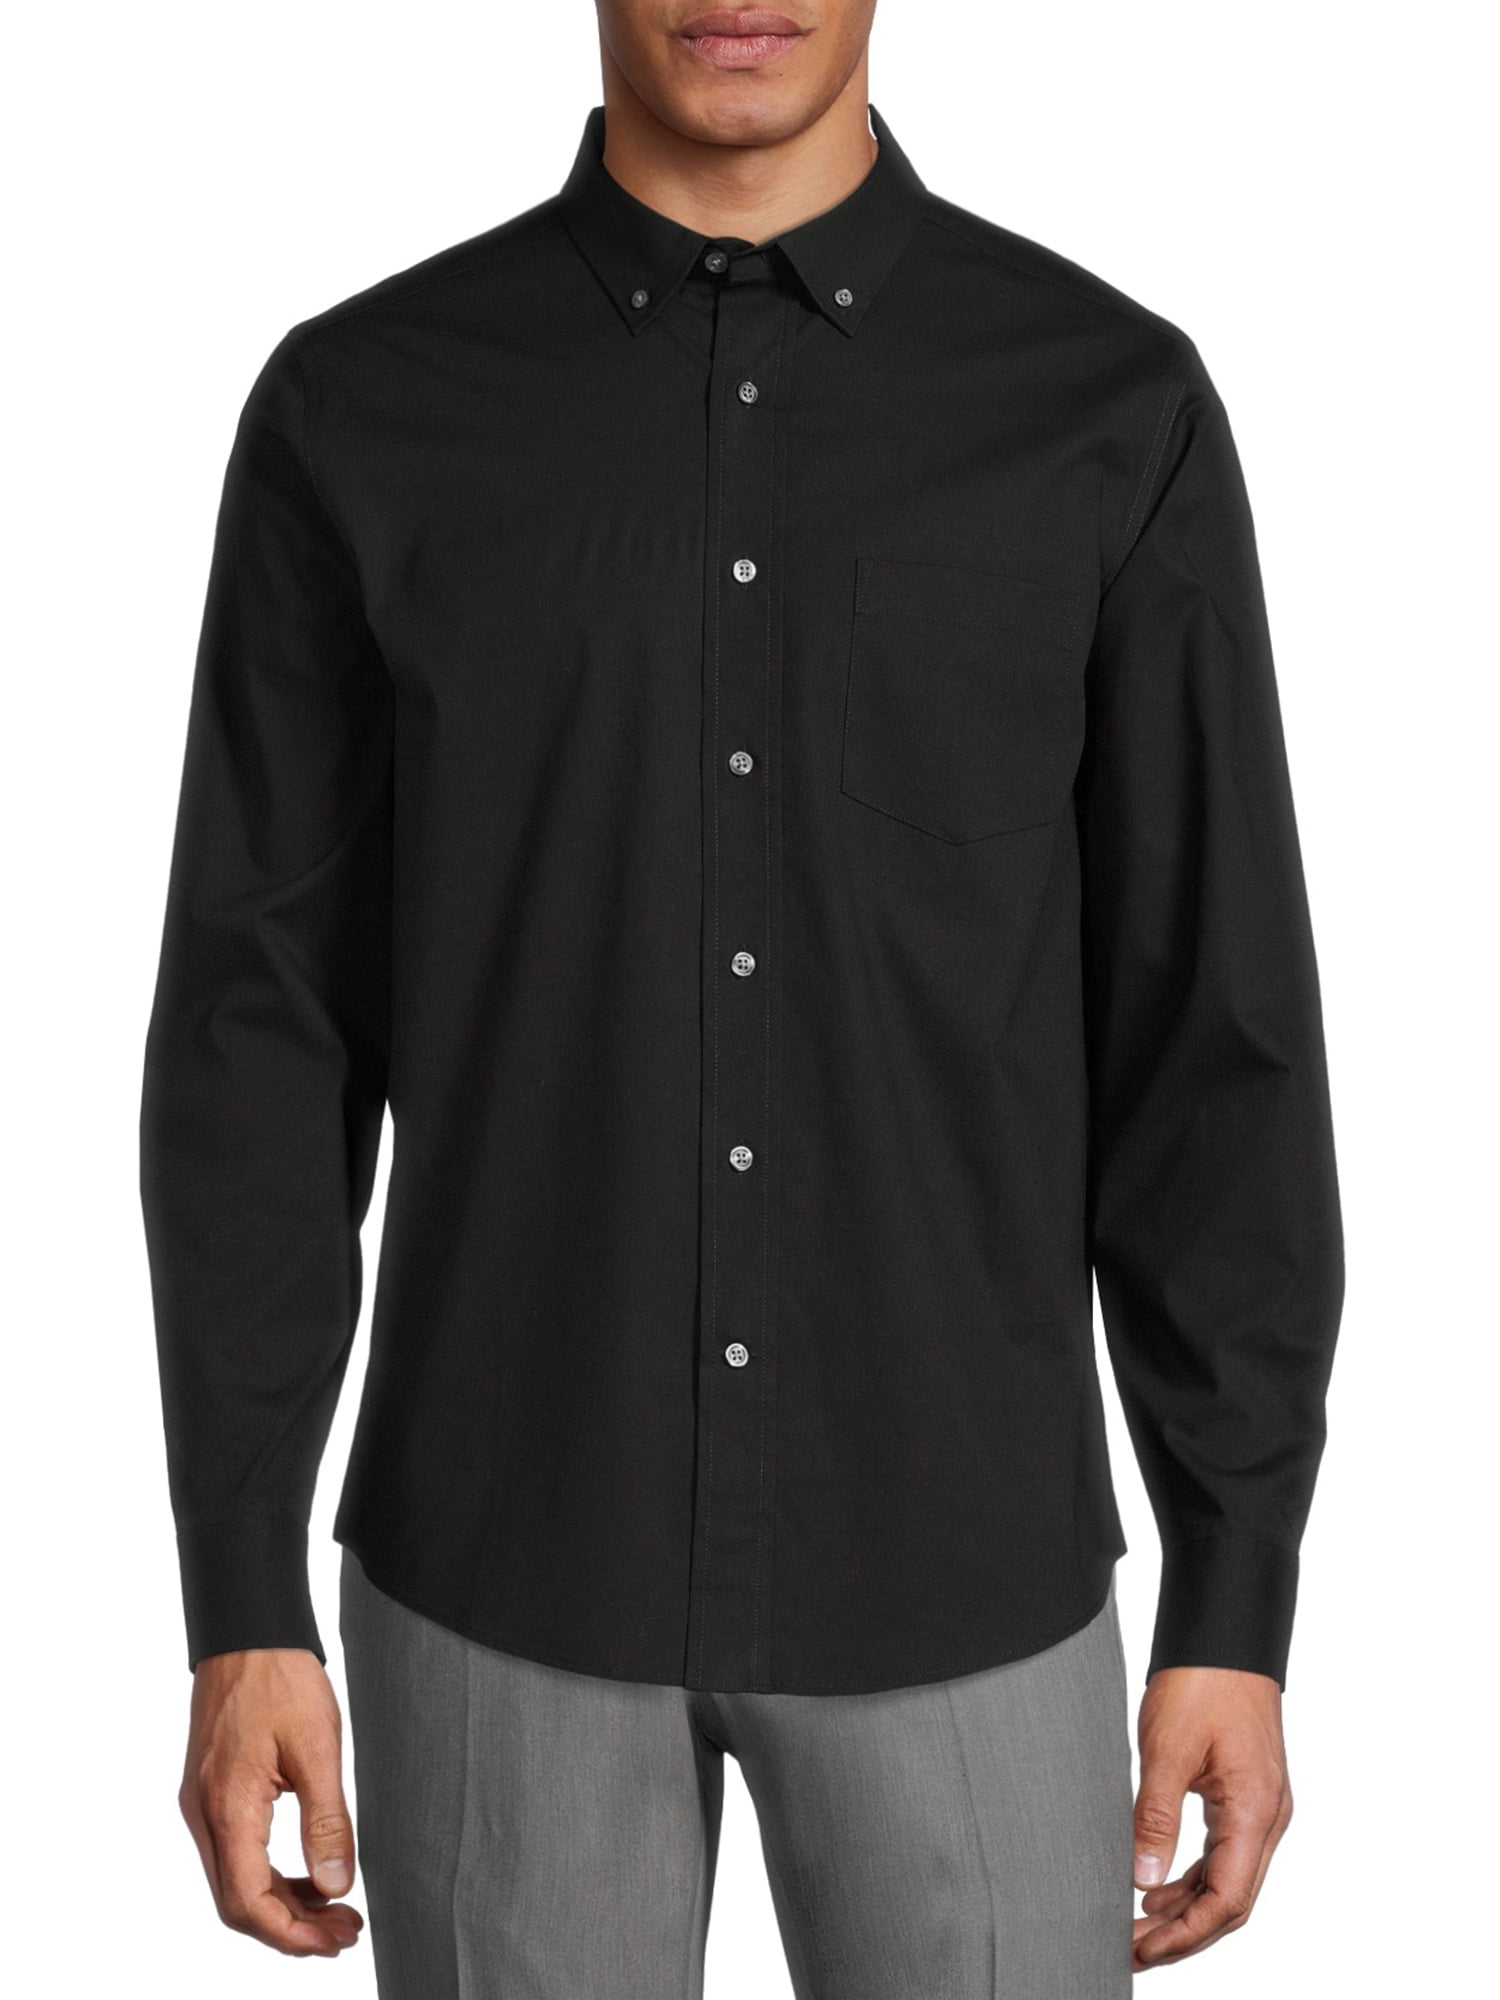 GEORGE Long Sleeve Regular Button-Up Shirt (Men's), 1 Pack - Walmart.com